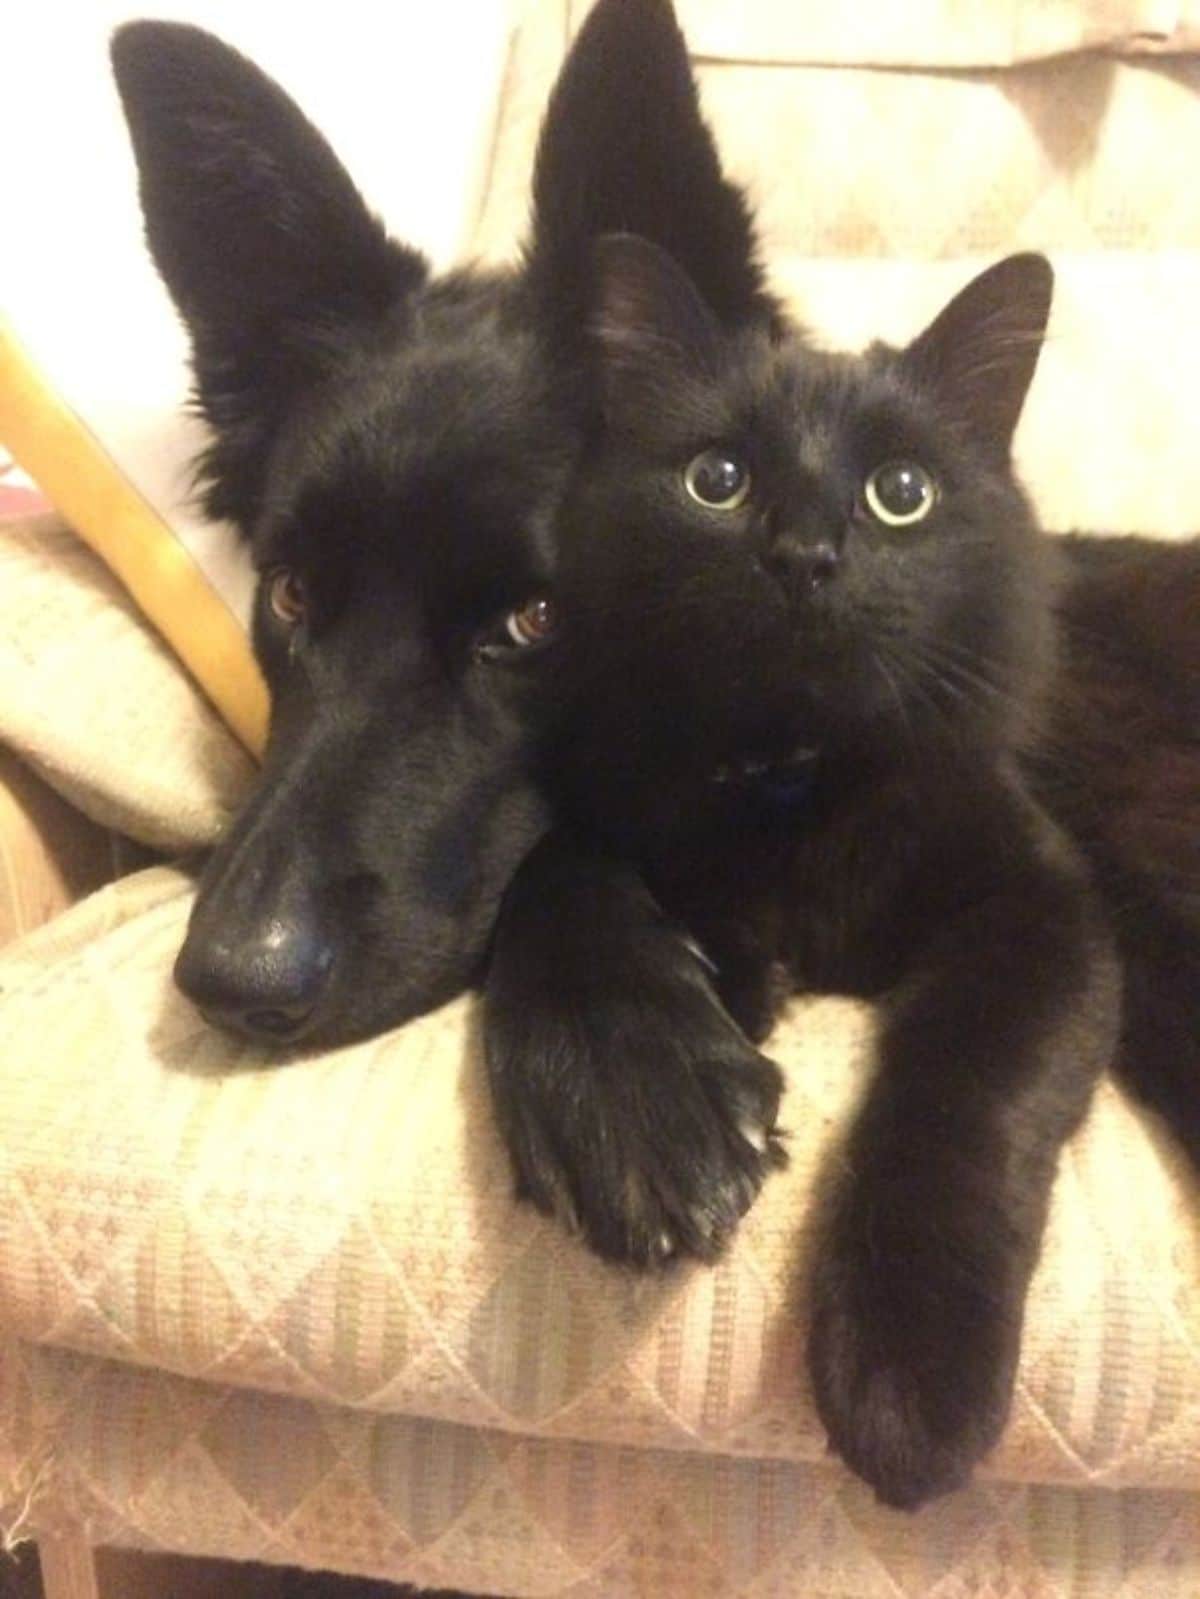 black dog and kitten cuddling together